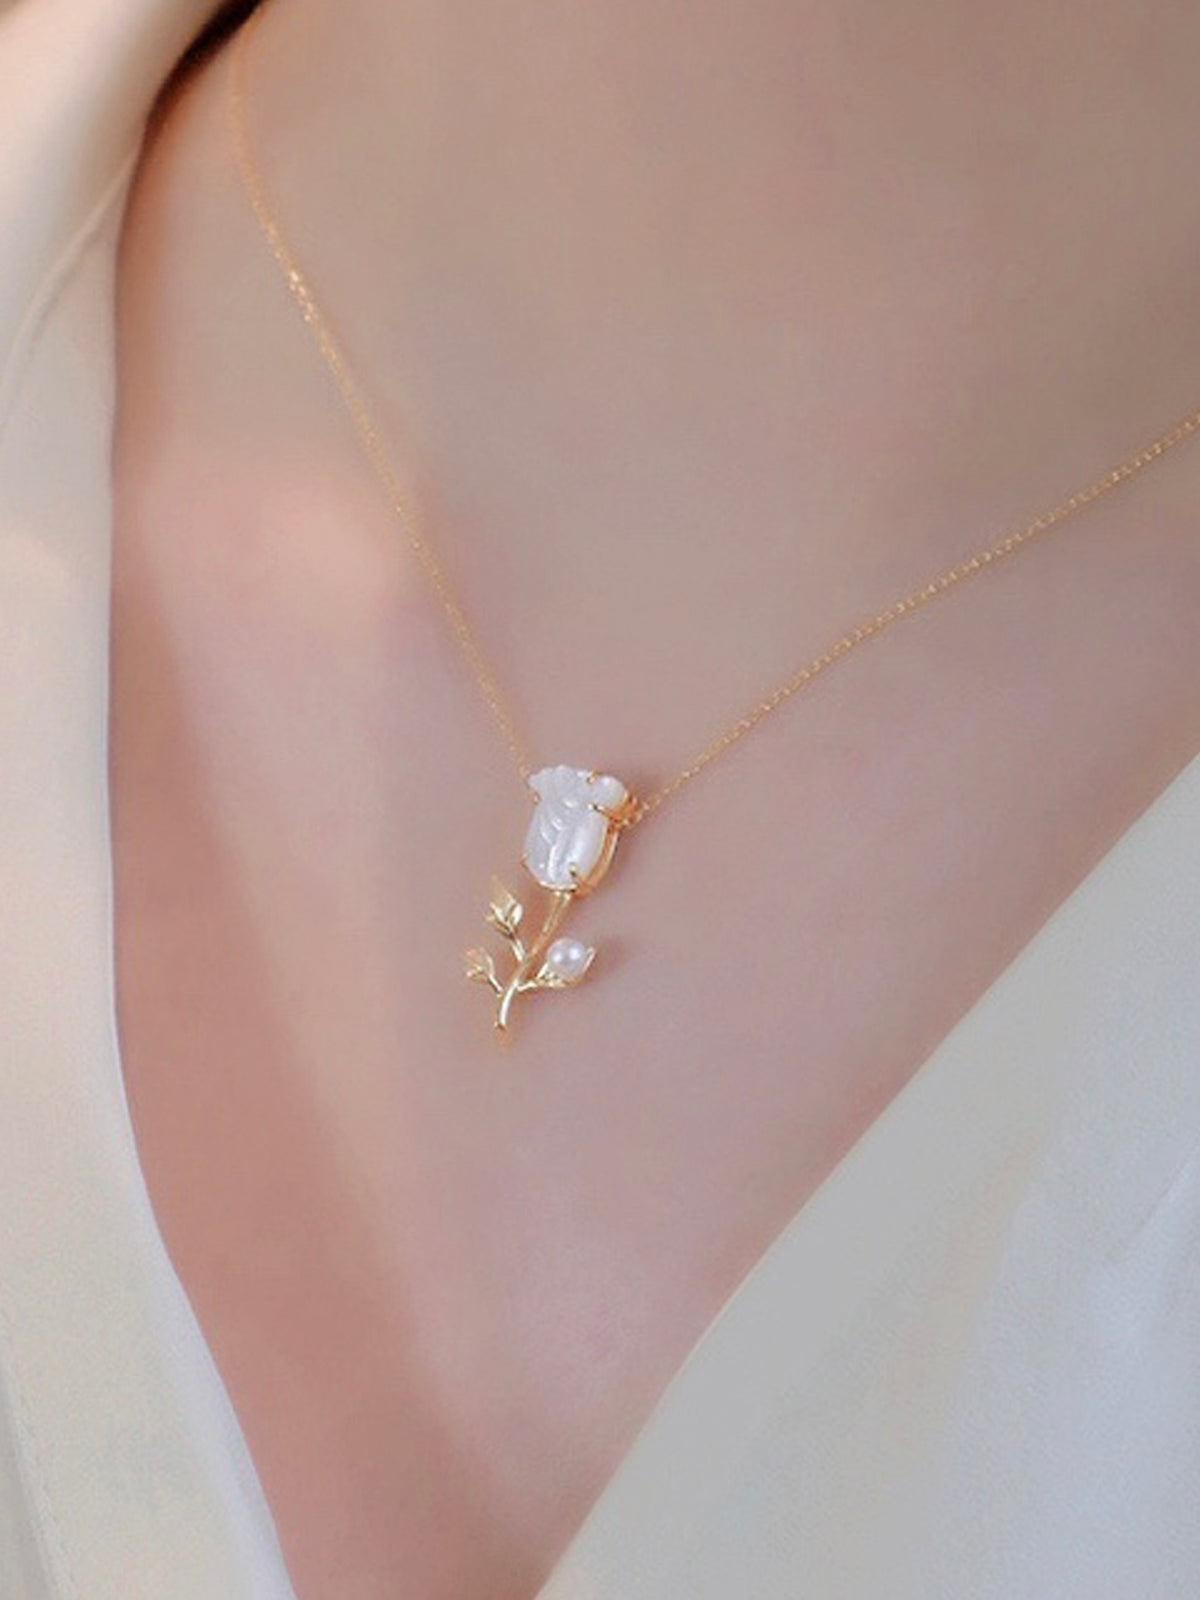 LAFIT · Beauty - Necklace 法式優雅花藝玫瑰頸鏈